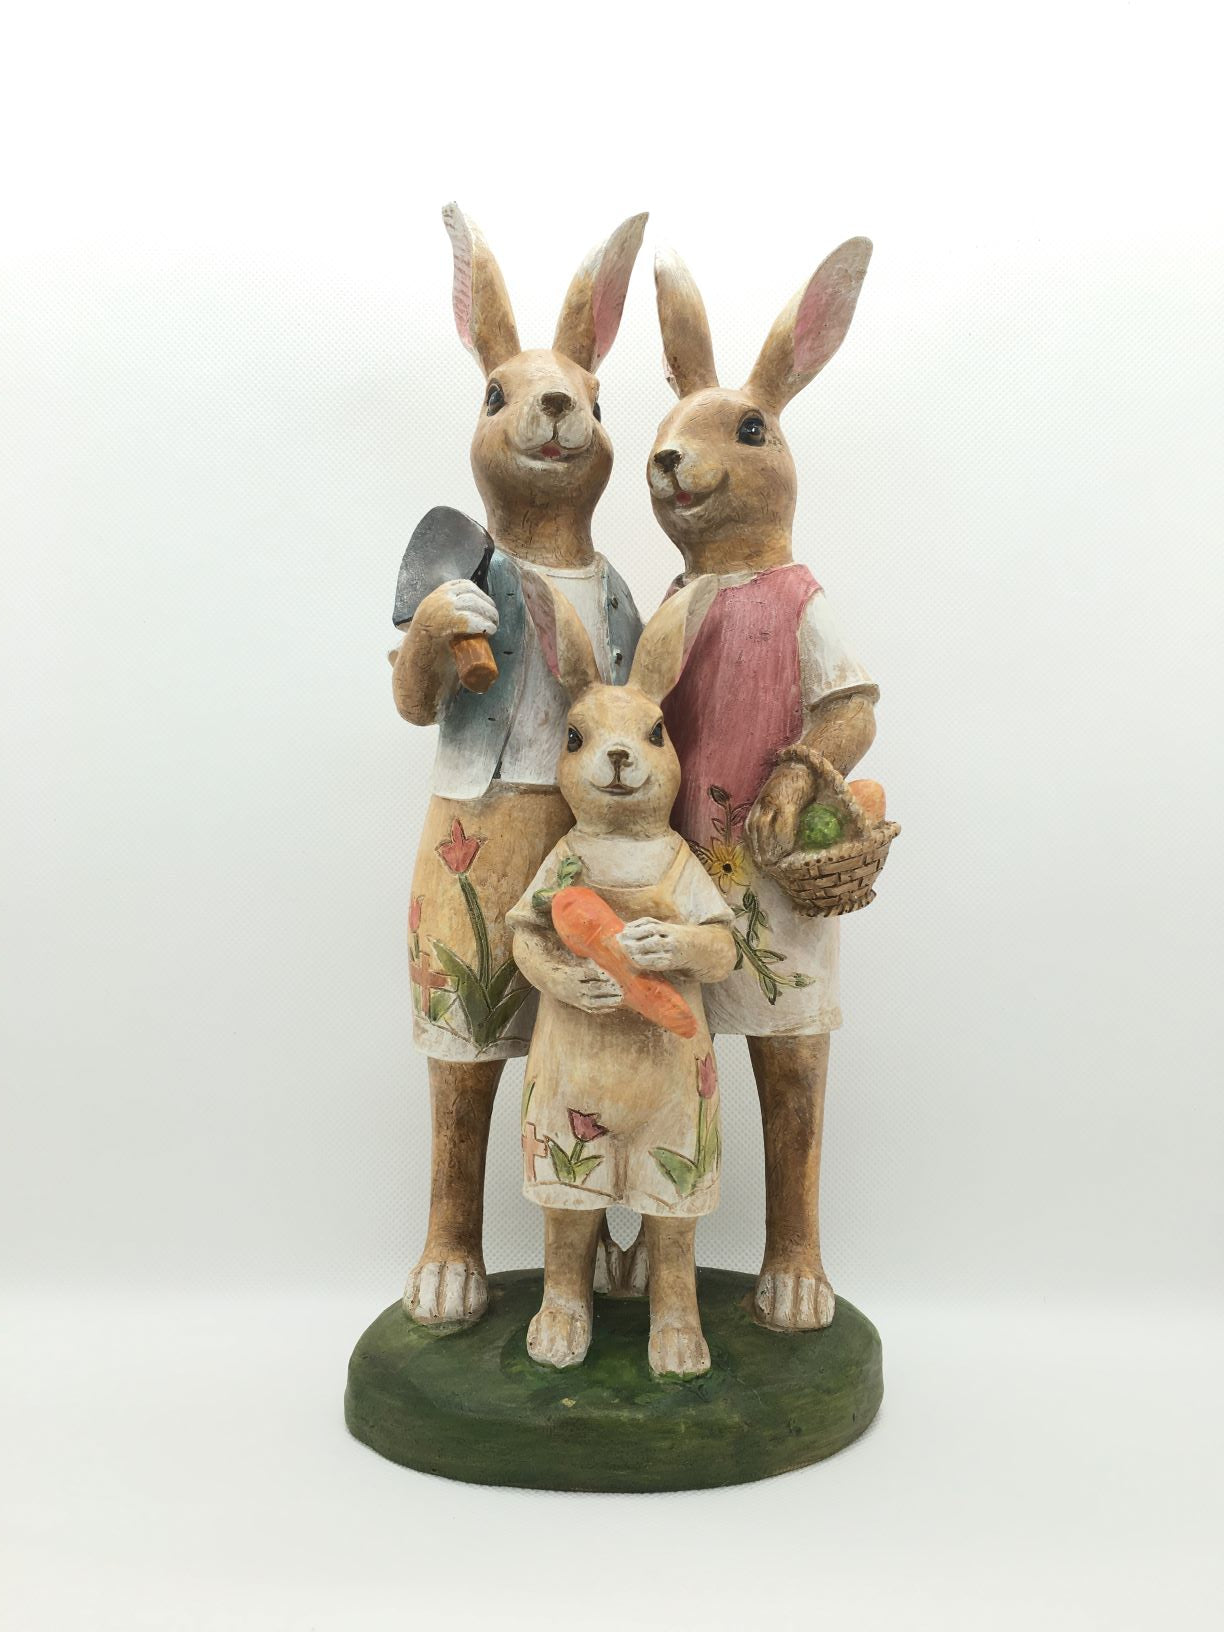 Famigliola di conigli in resina decorata a mano. Dimensioni: cm 13 x 9 x 30 h